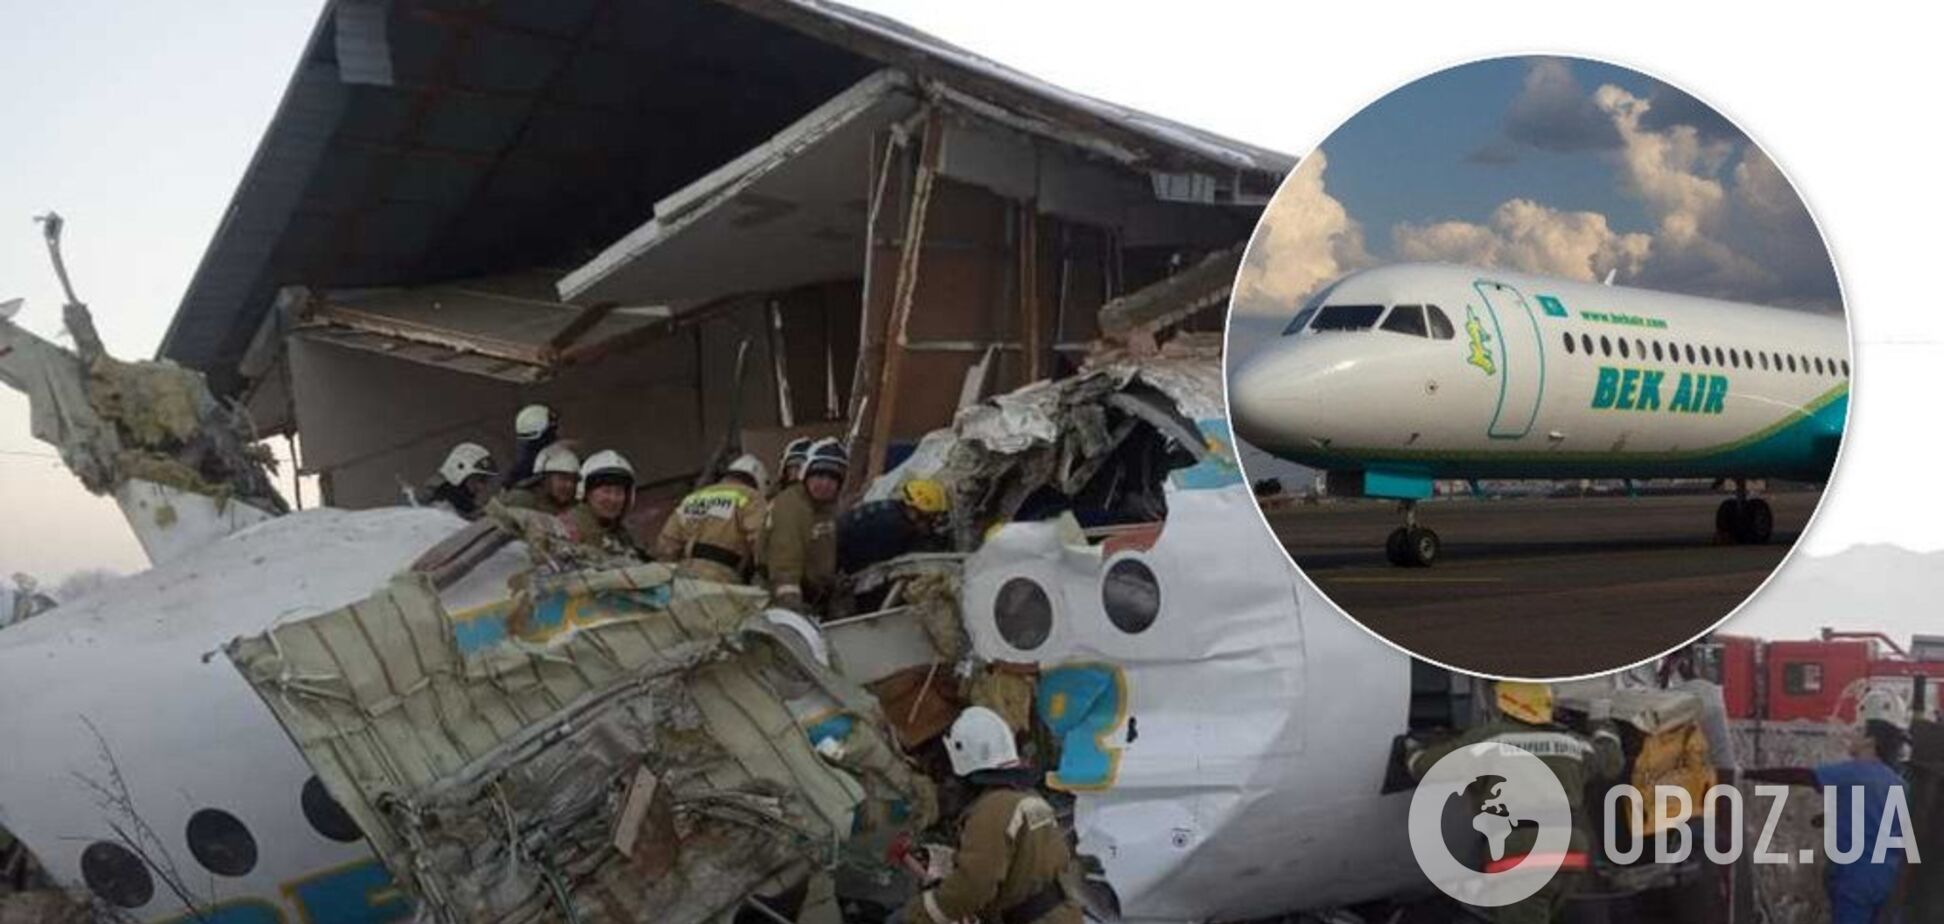 'Всего хорошего и доброго пути': появилась запись переговоров перед авиакатастрофой в Казахстане